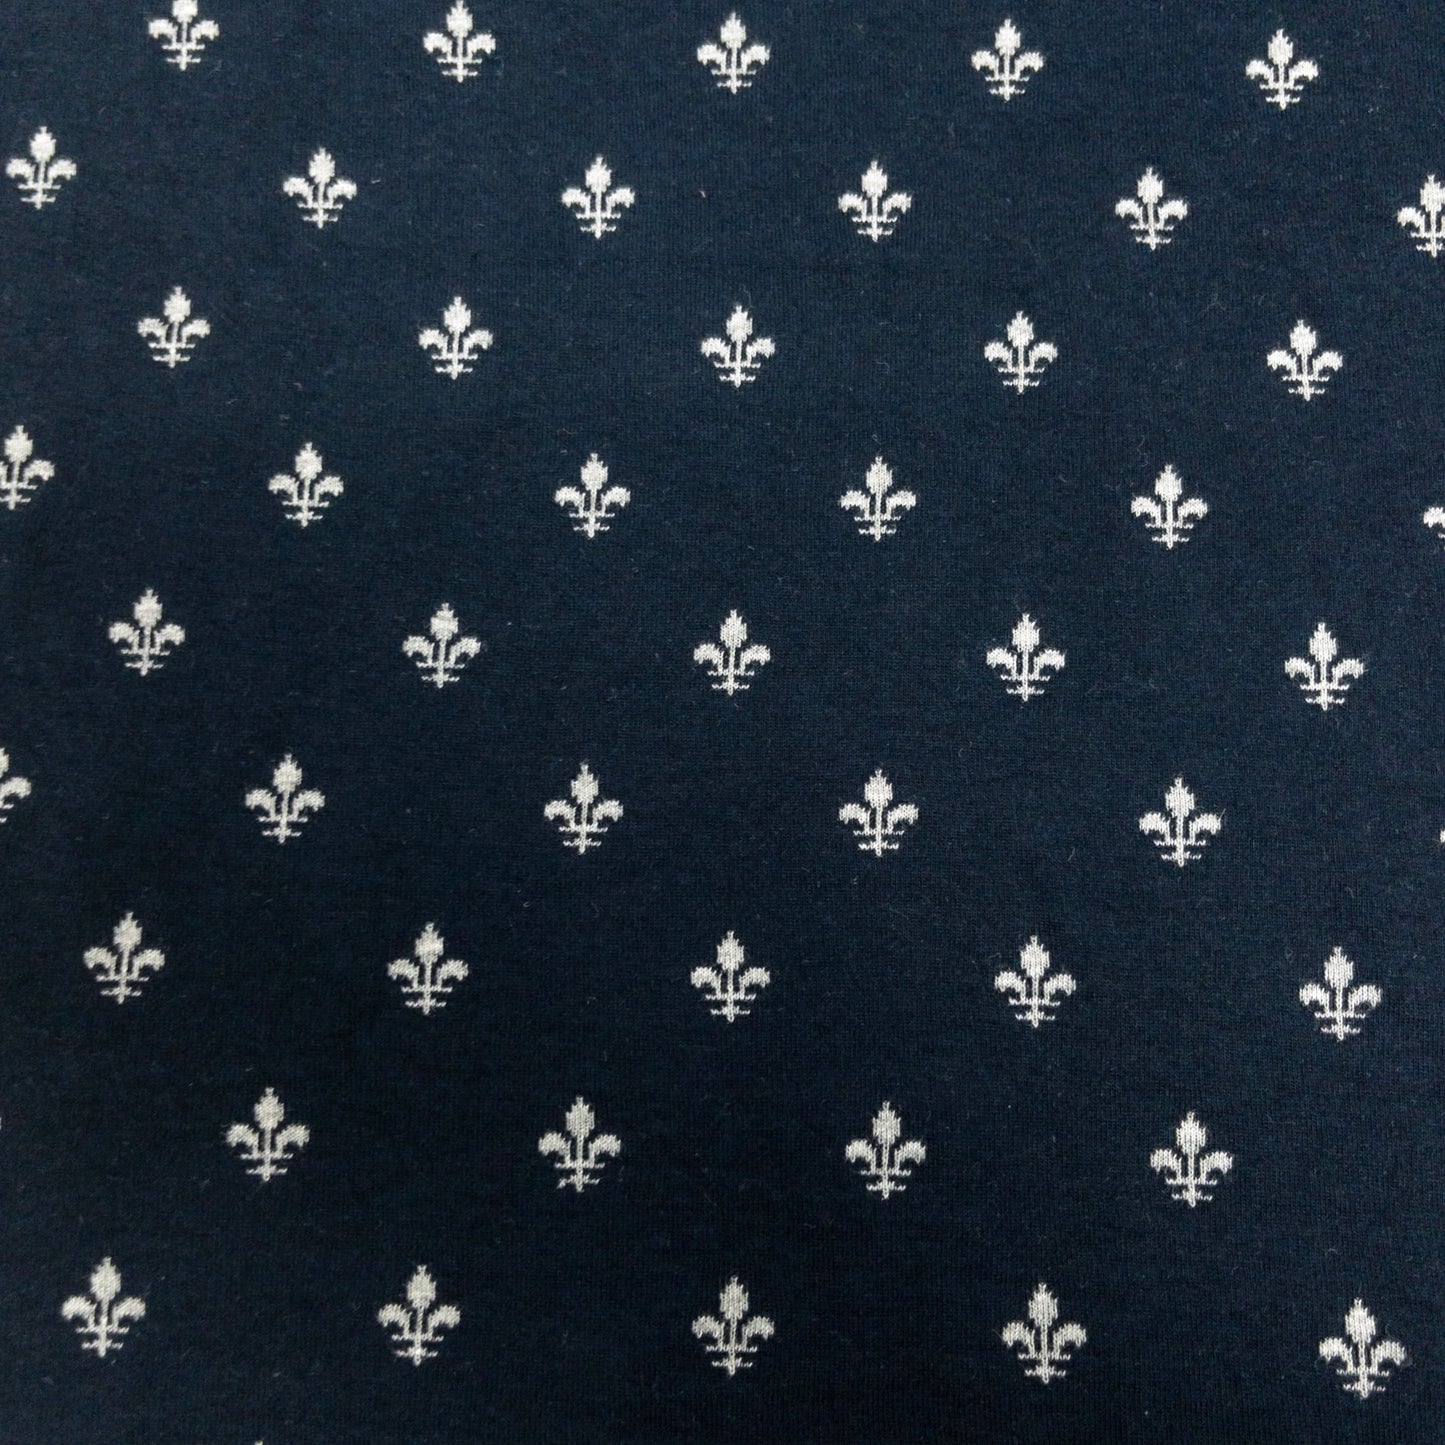 maffon | anchor navy gray 船錨 深藍+灰色 | cotton jacquard knit 雙面純棉提花針織 - 160cm